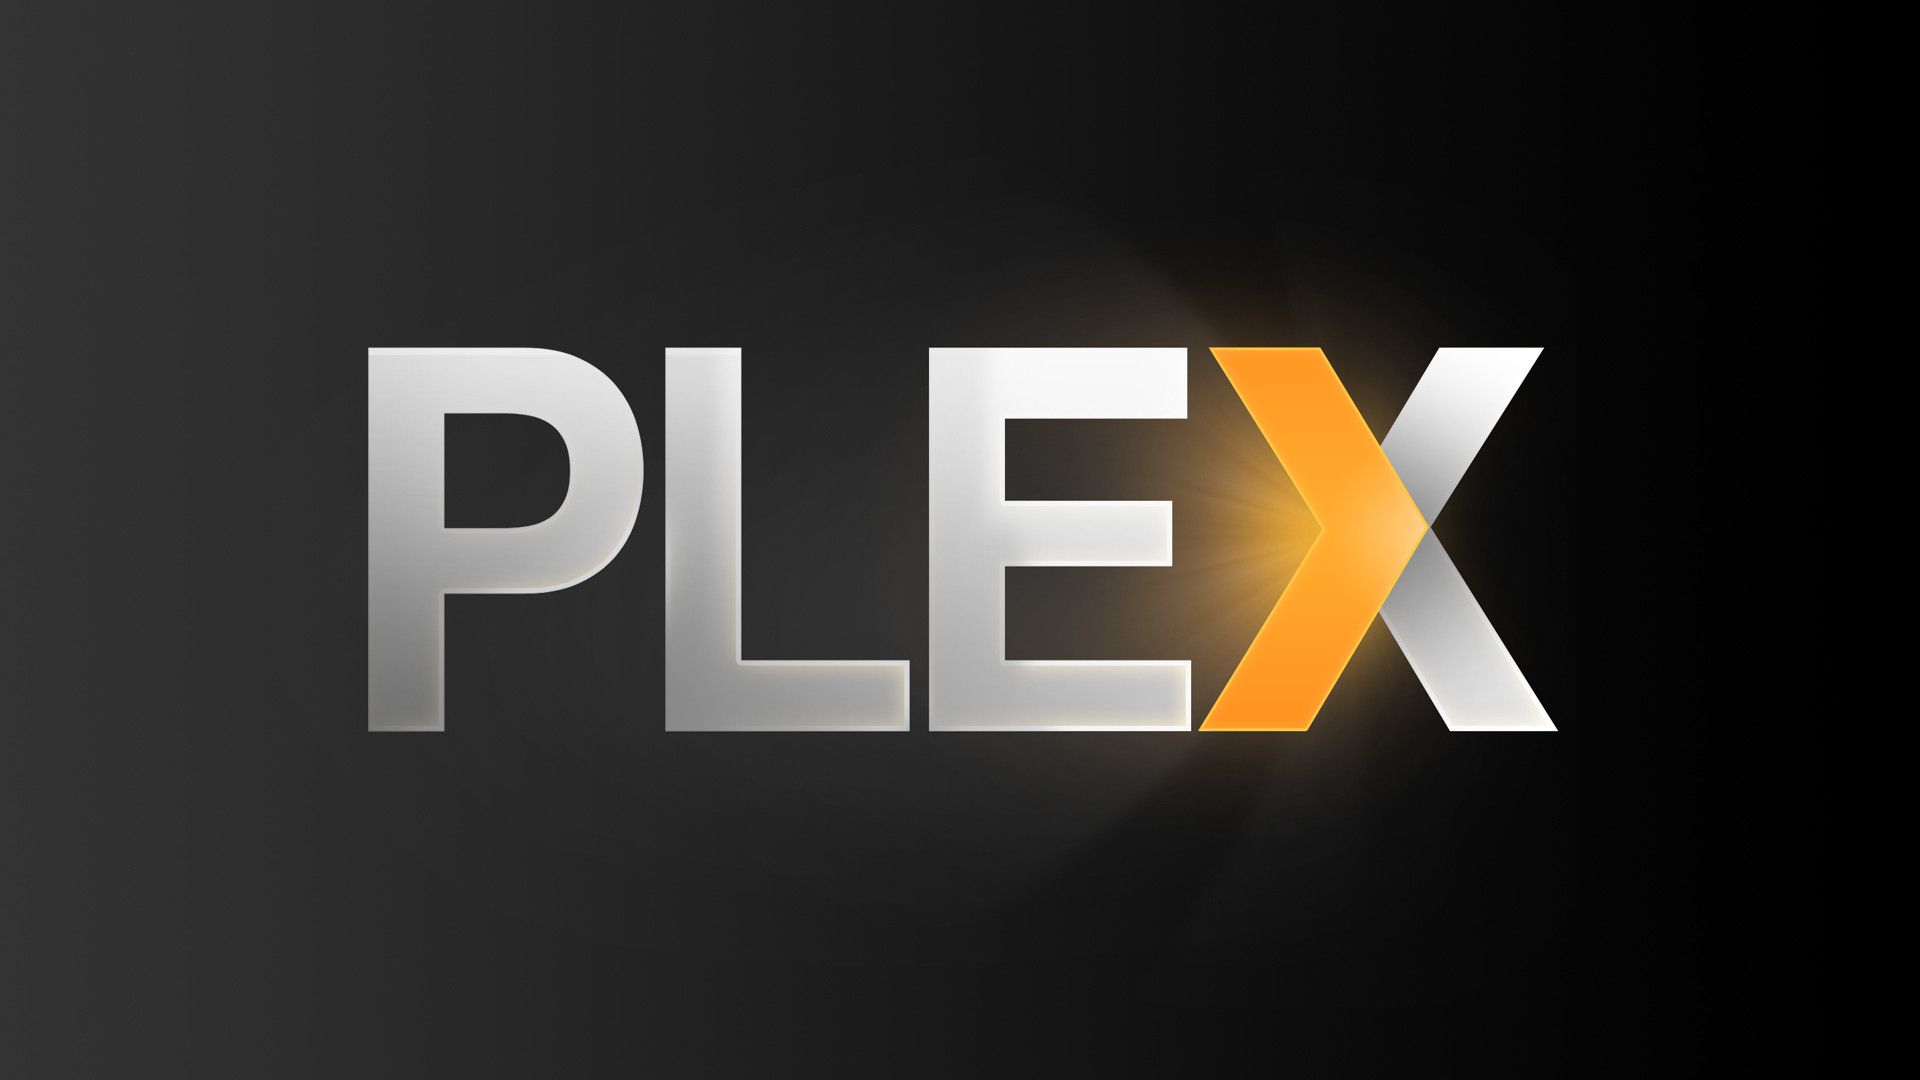 download plex for pc